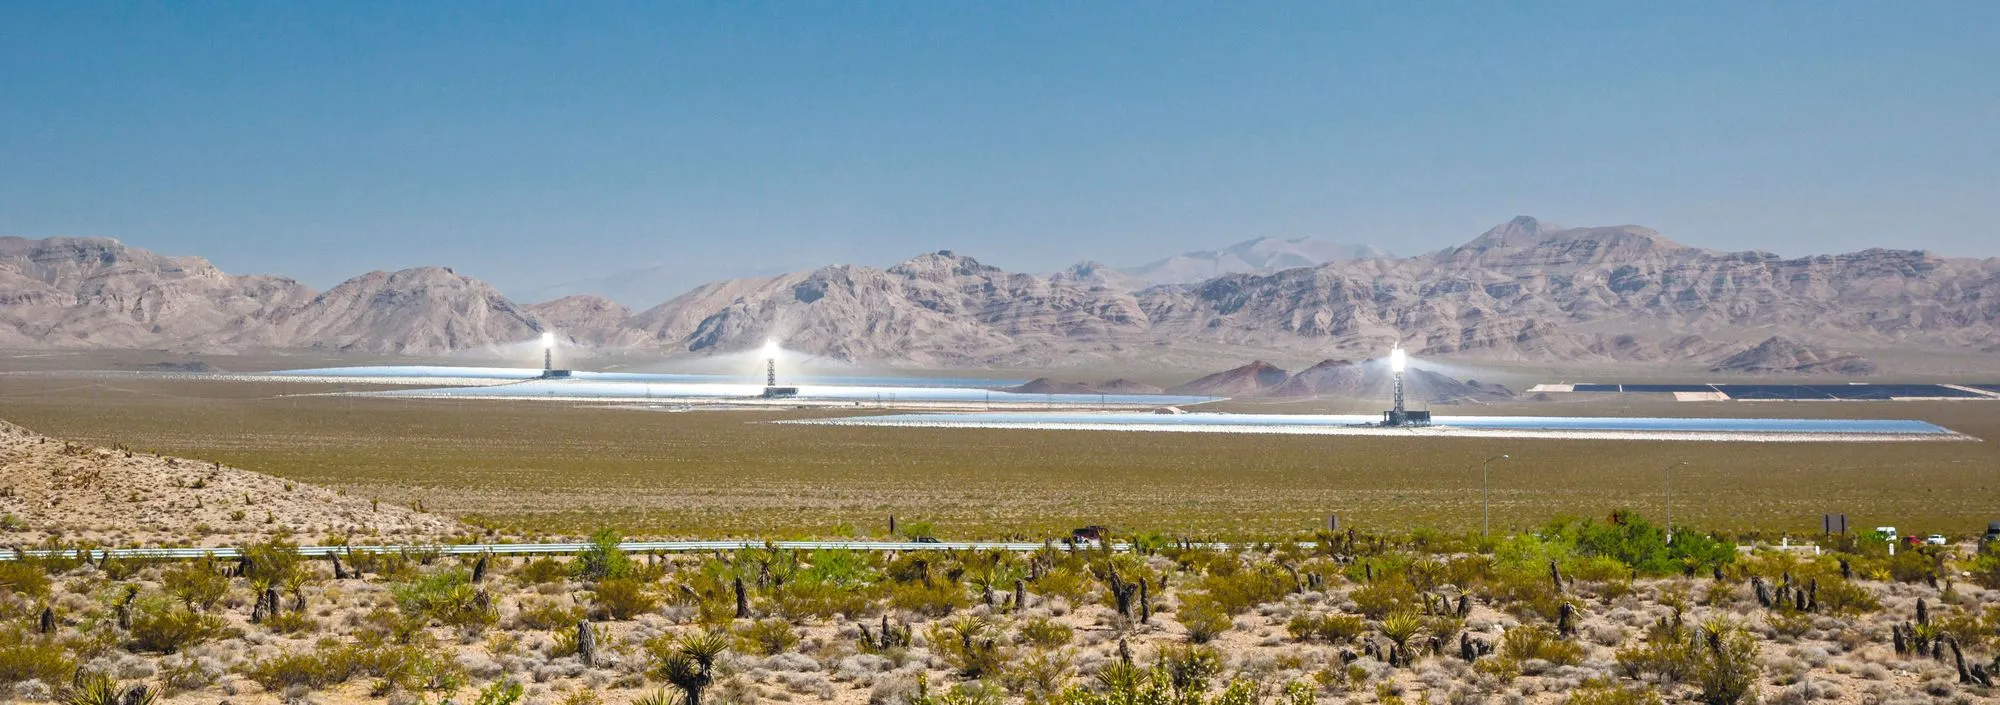 La centrale photovoltaïque d'Ivanpah dans le désert du Nevada